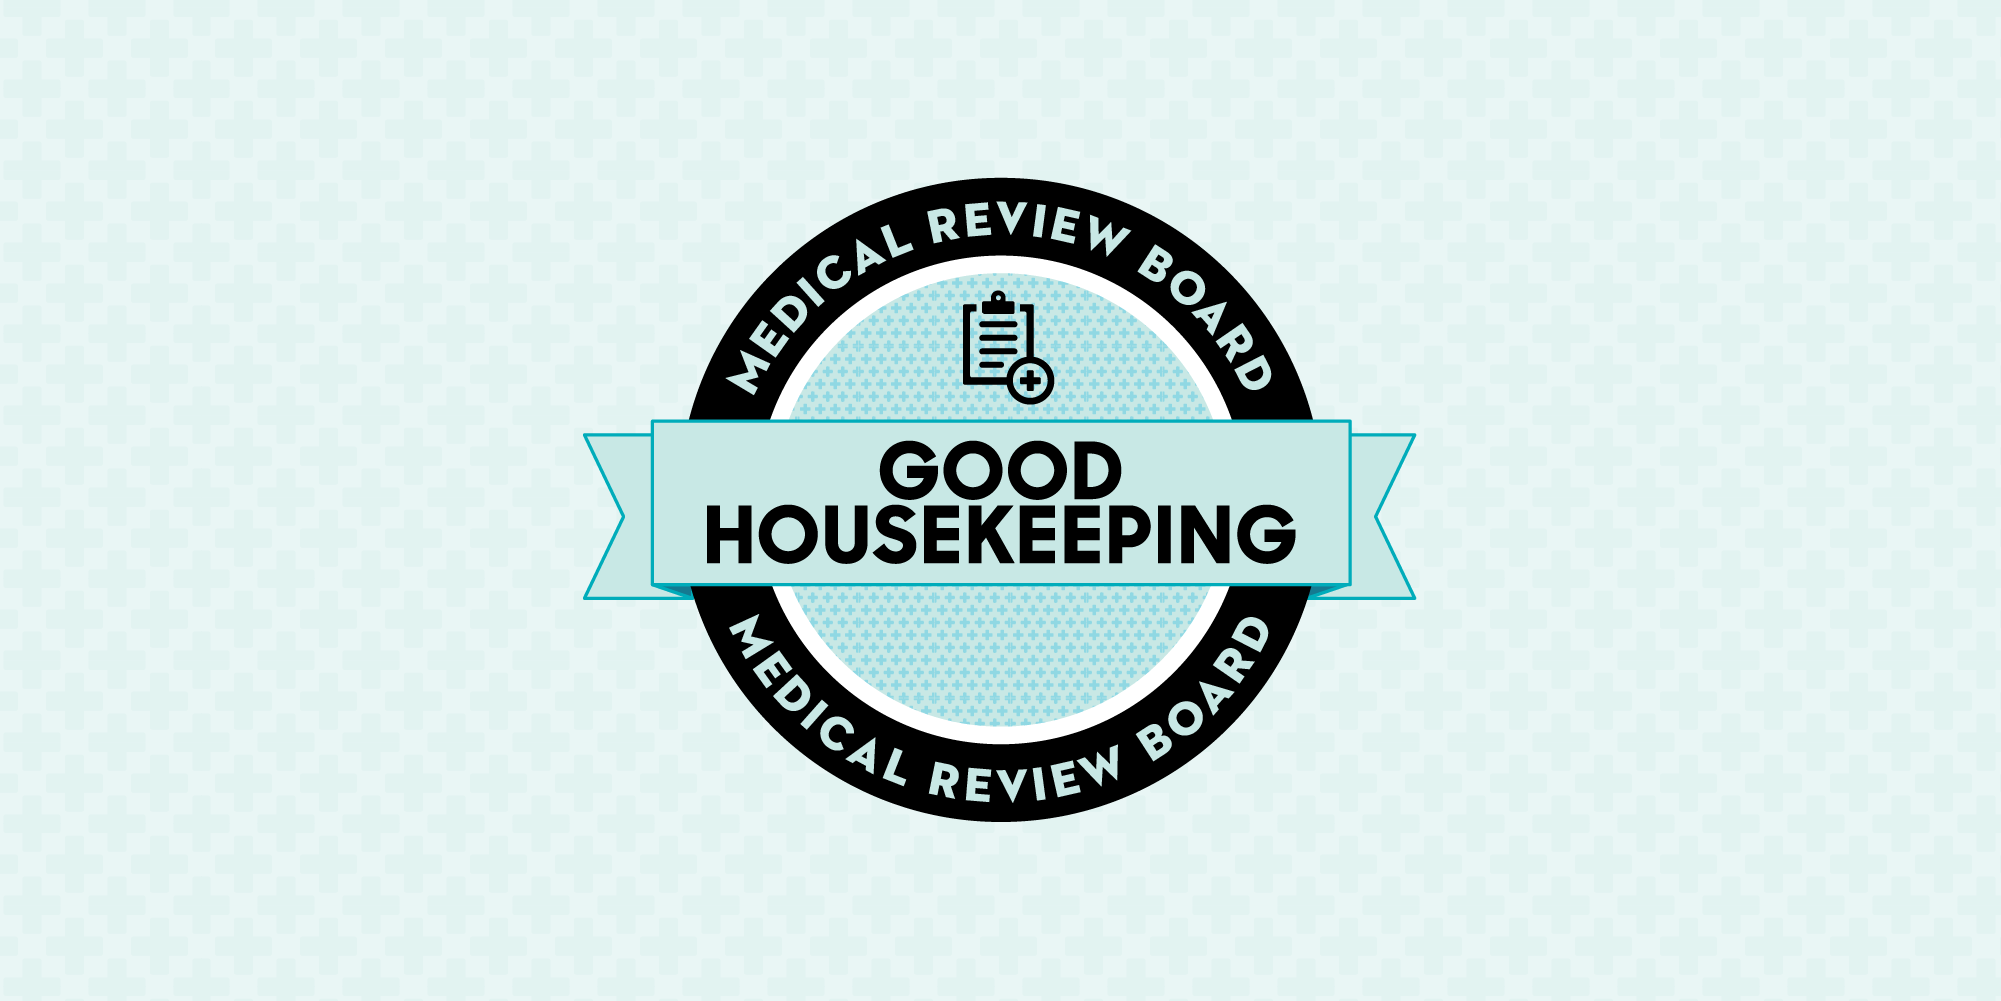 Good Housekeeping - DLT Ireland Magazine Subscription